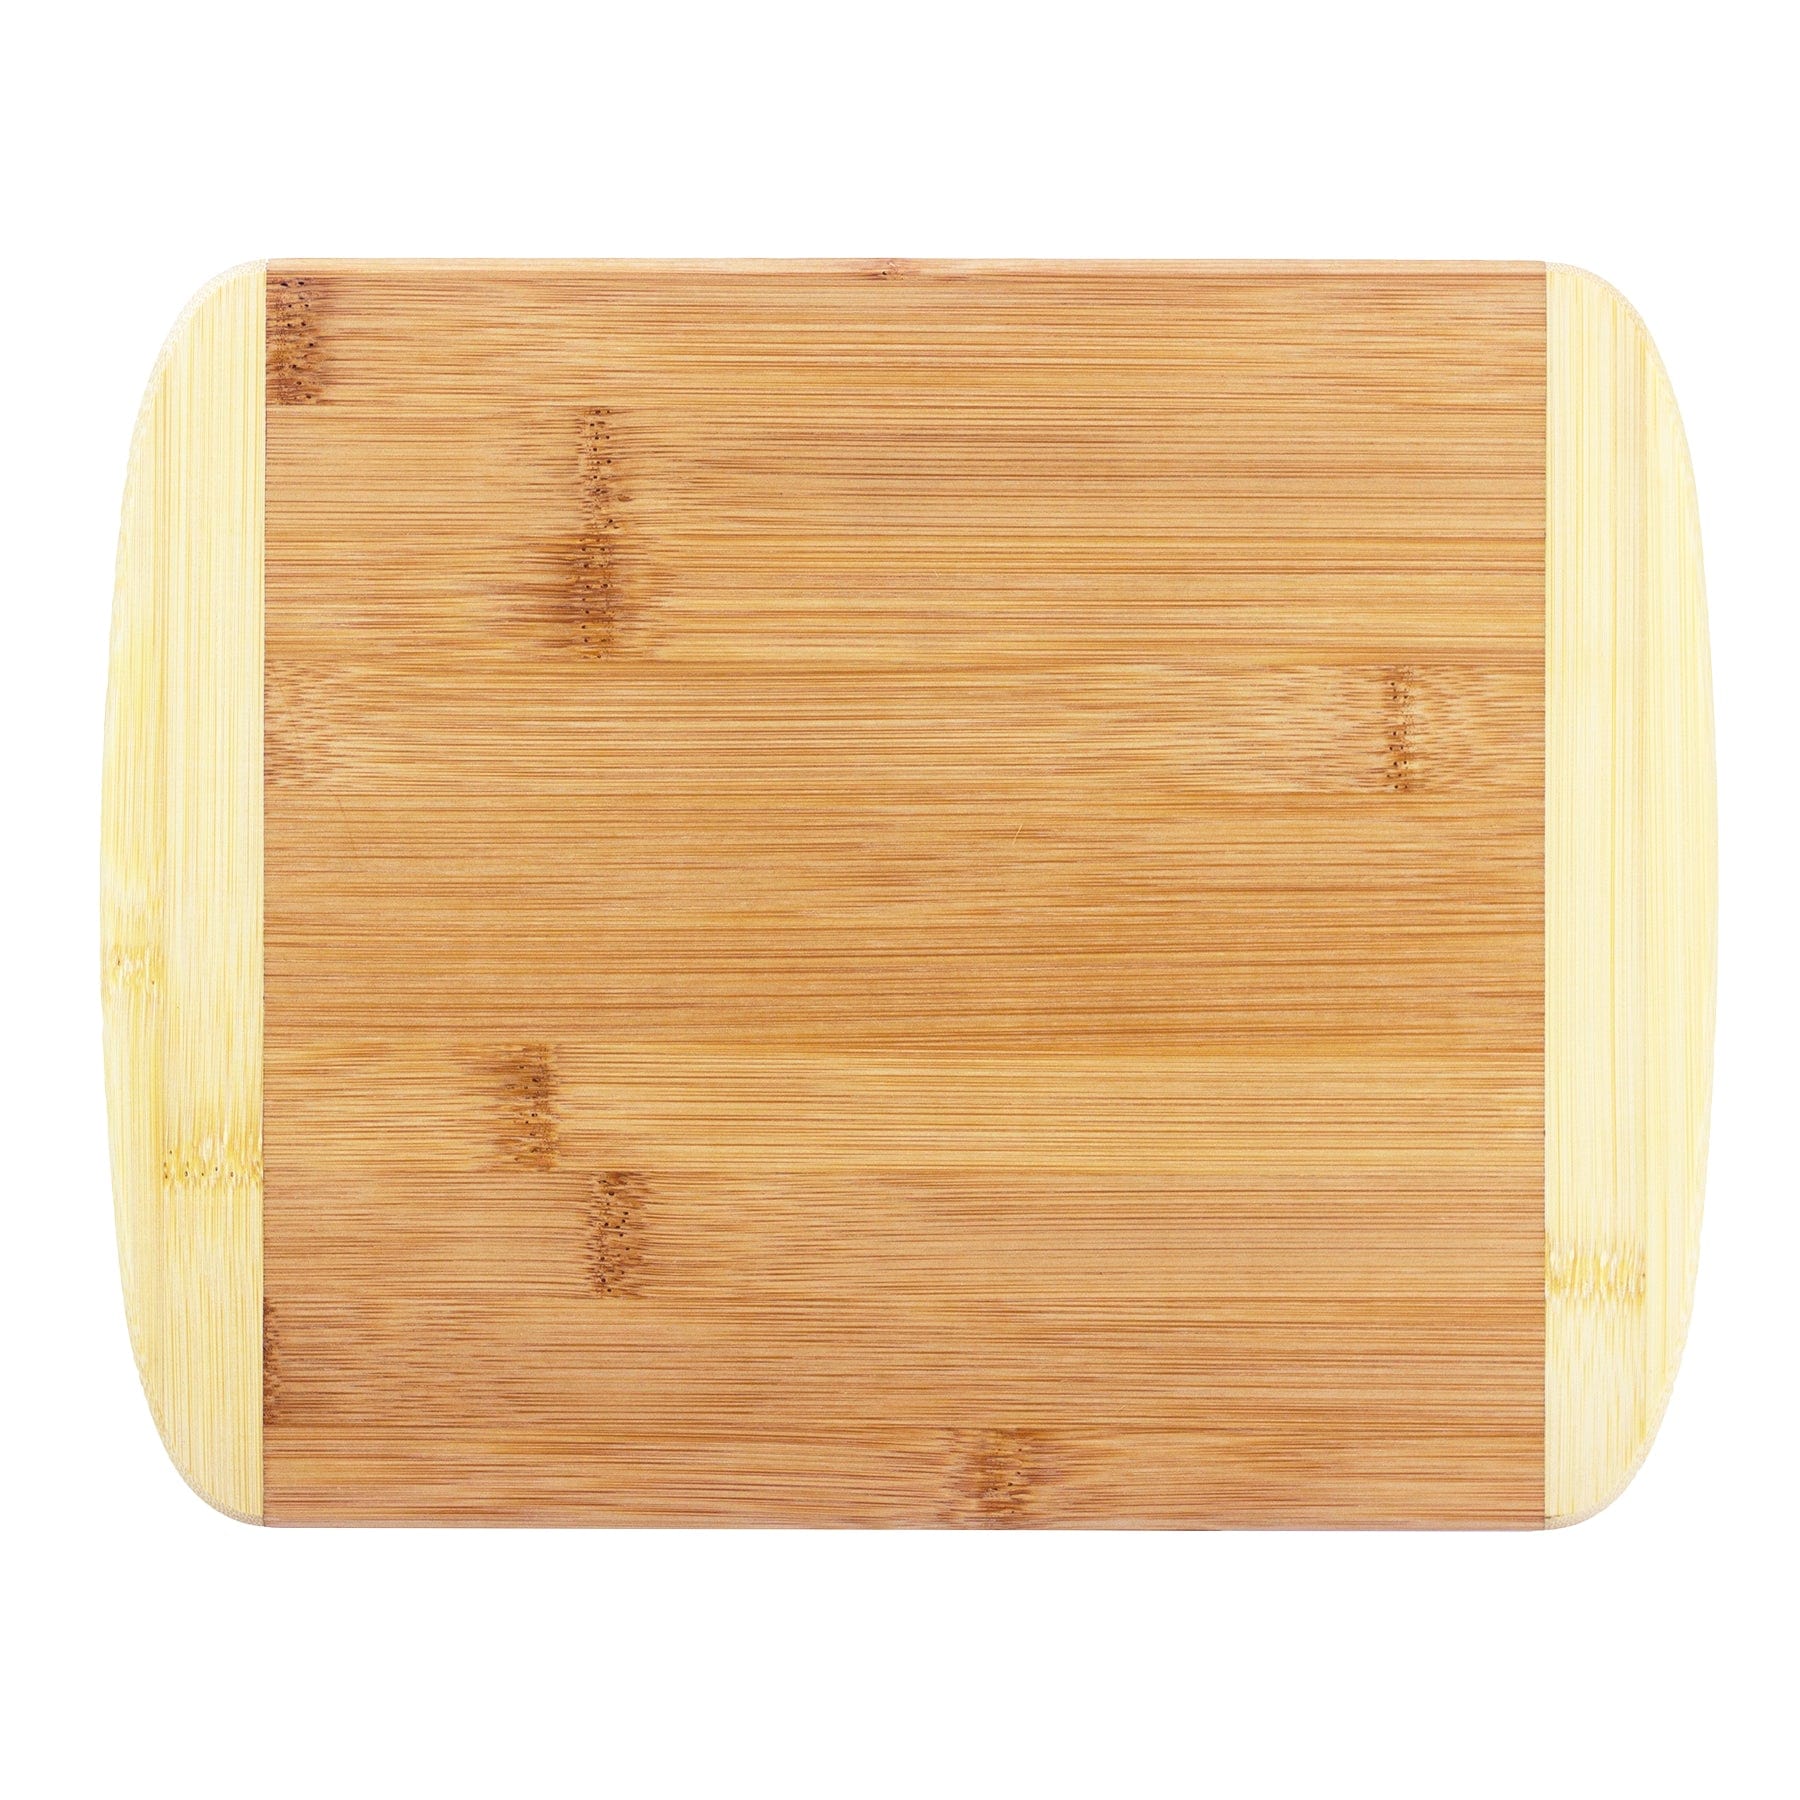 Totally Bamboo Two-Tone Cutting Board, 11" x 8-3/4"